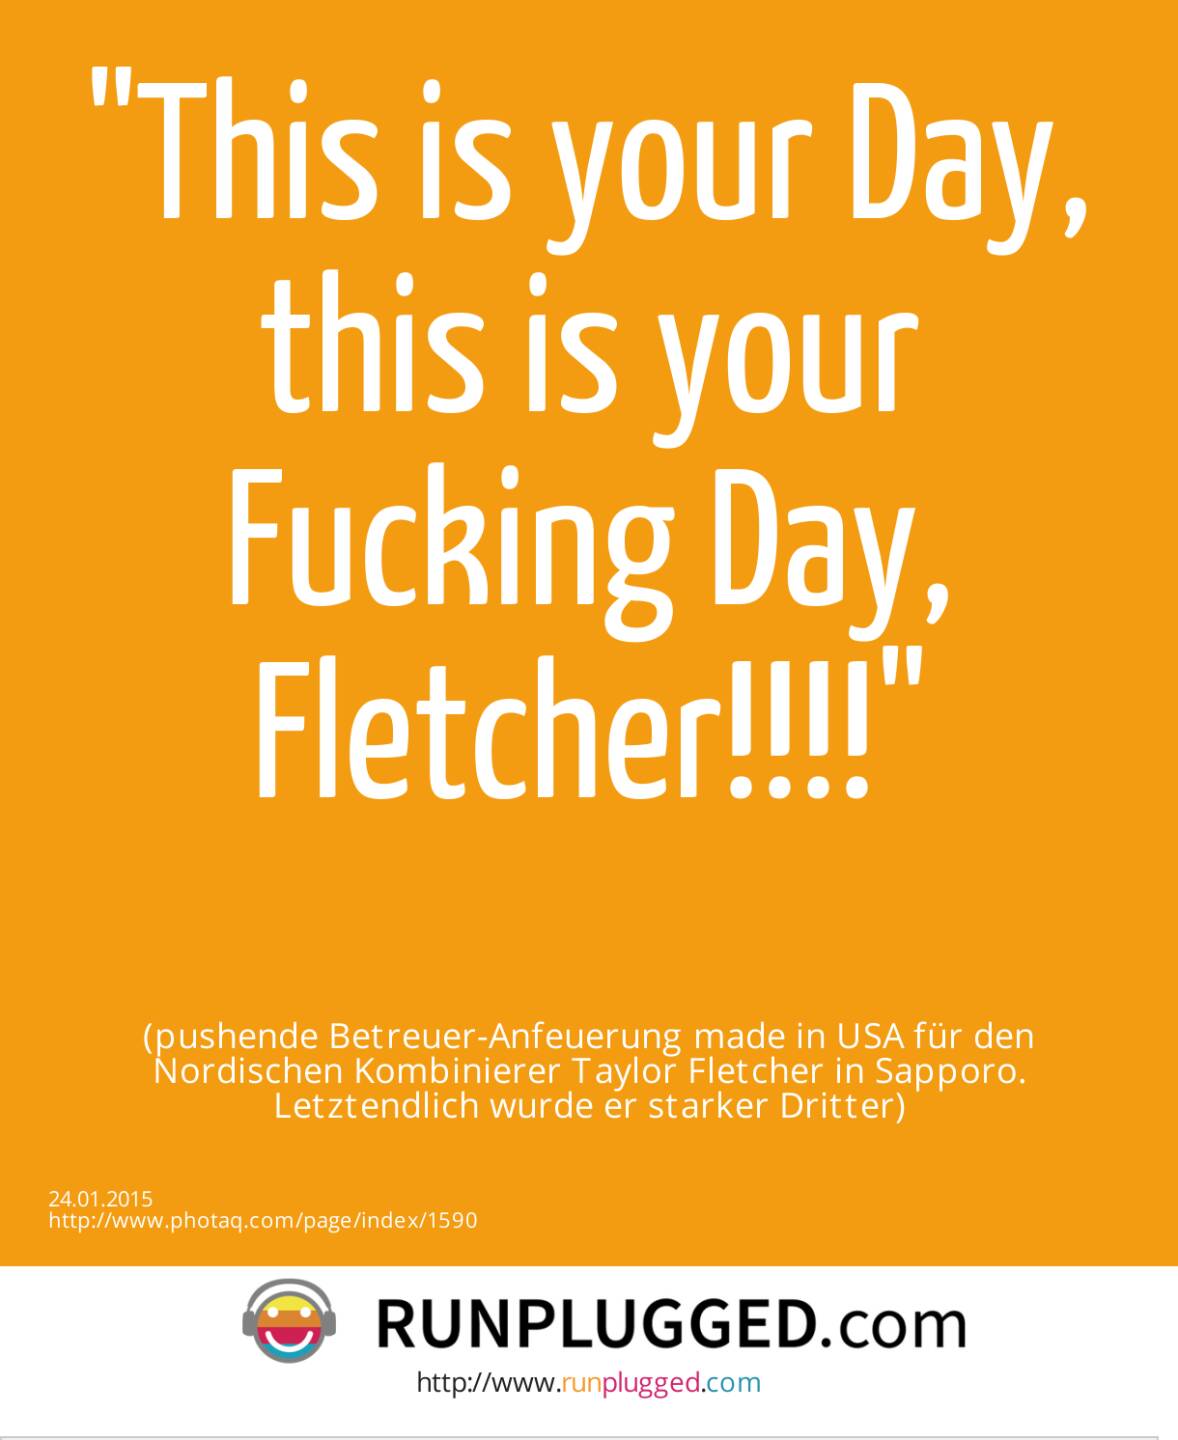 This is your Day, this is your Fucking Day, Fletcher!!!! (pushende Betreuer-Anfeuerung made in USA für den Nordischen Kombinierer Taylor Fletcher in Sapporo. Letztendlich wurde er starker Dritter)